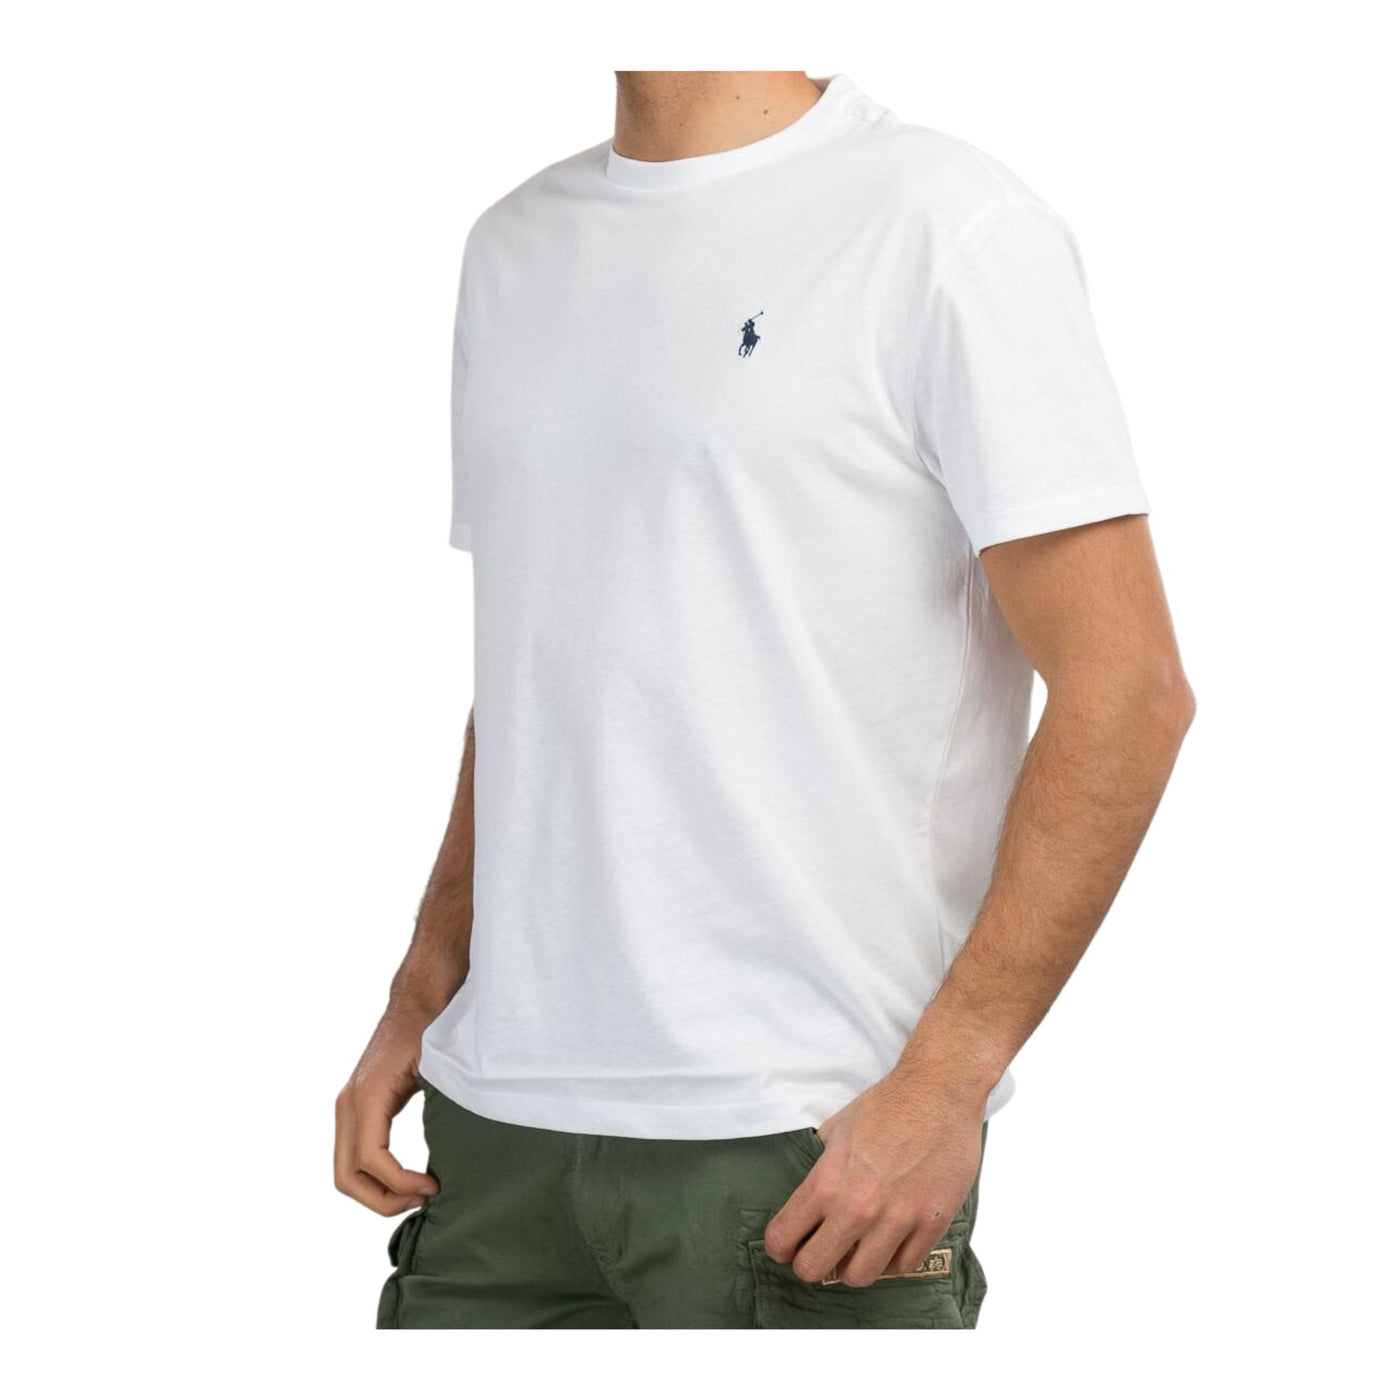 Immagine della T-shirt bianca da uomo manica corta con logo Polo Ralph Lauren ricamato con scollo a girocollo